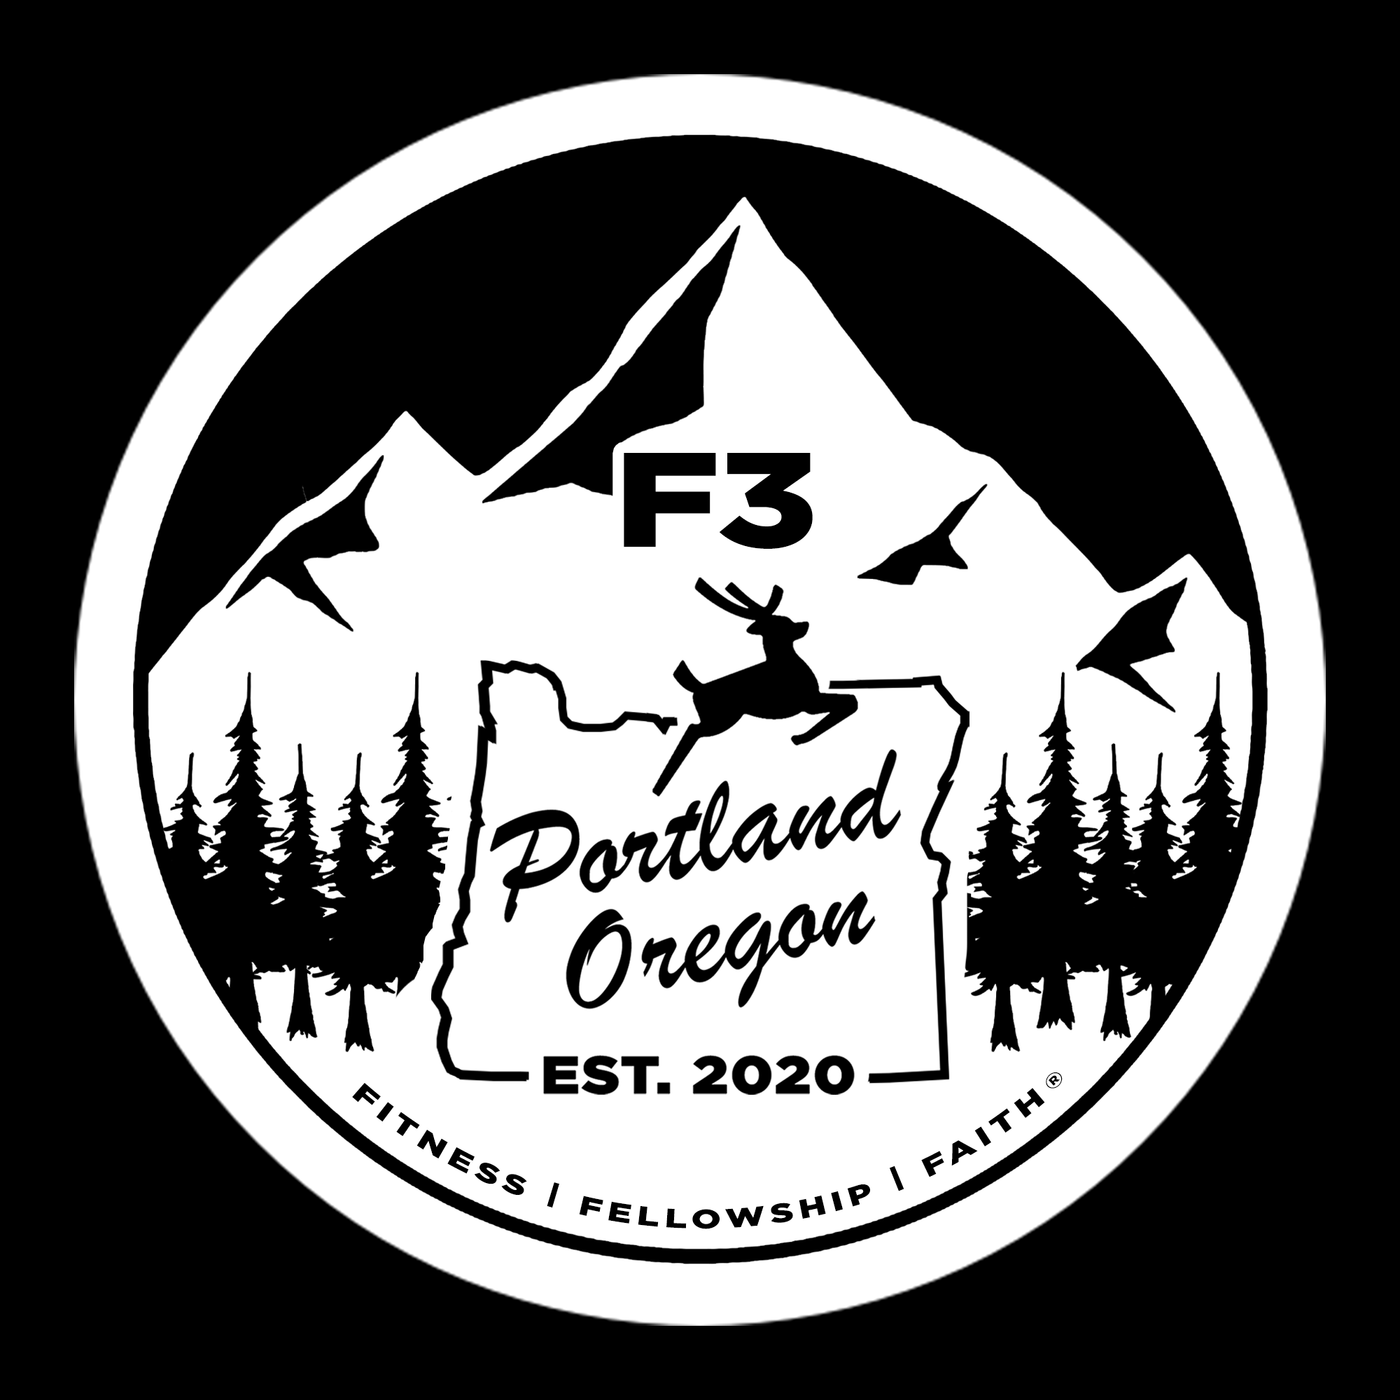 F3 Portland Oregon Pre-Order March 2021